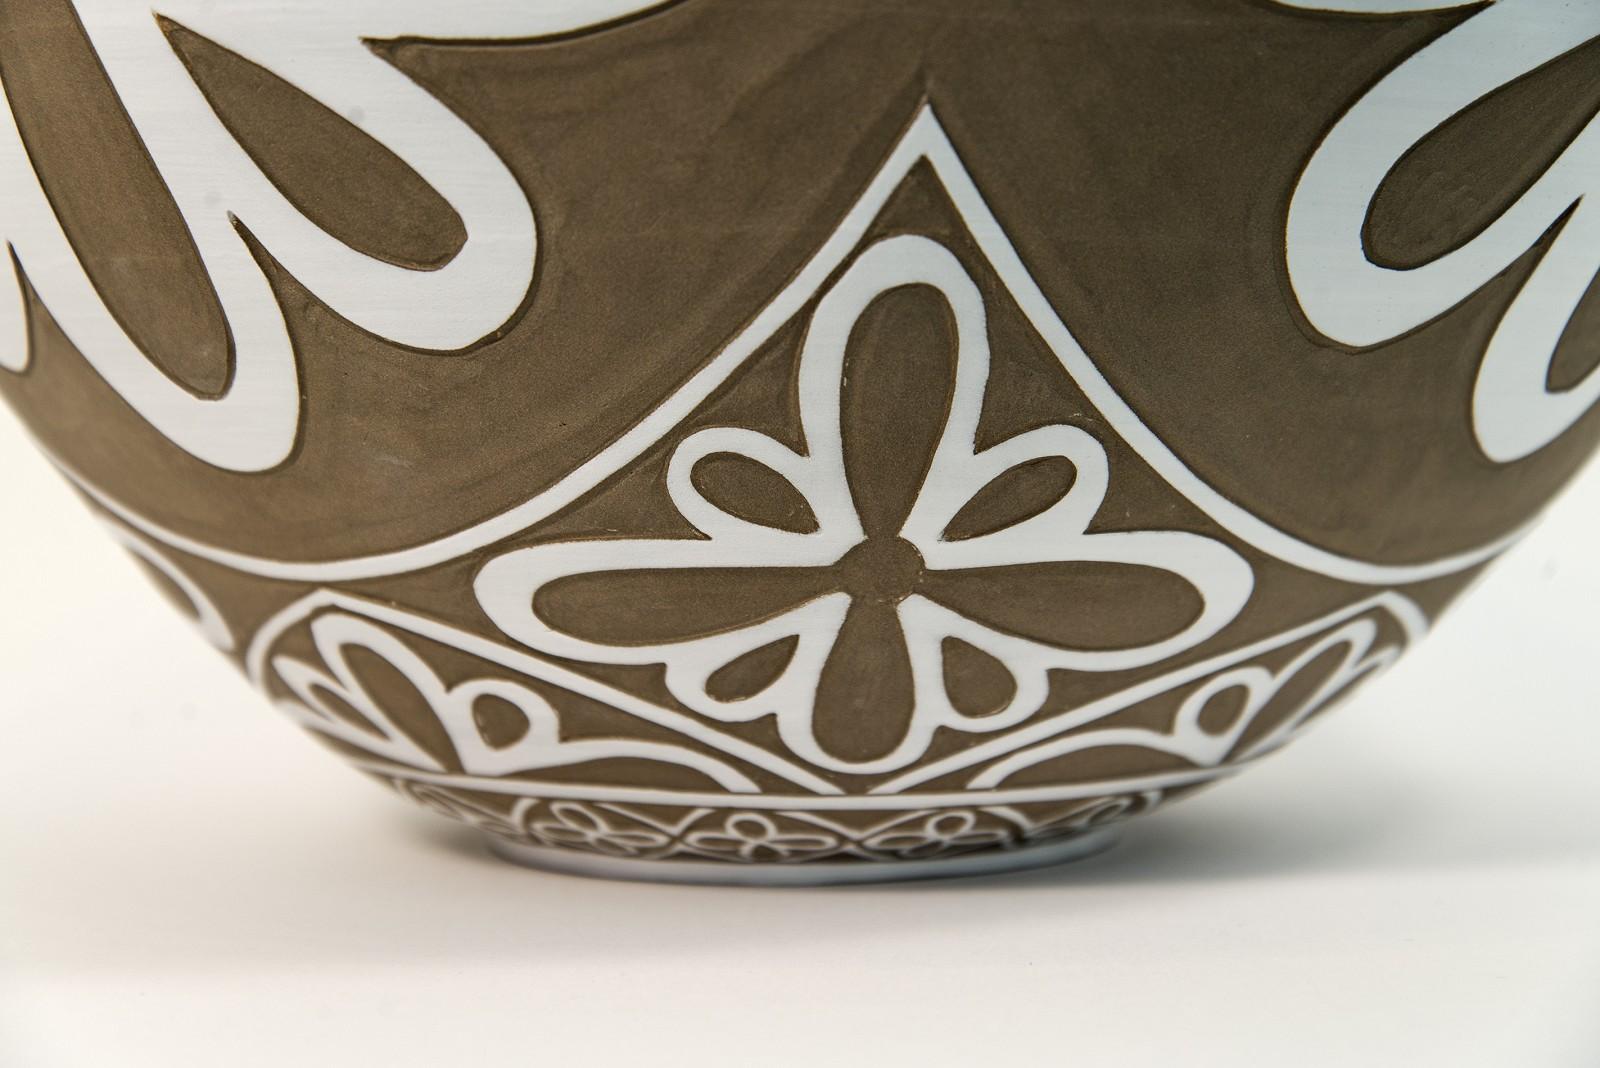 Dieses taupefarbene Porzellangefäß von Loren Kaplan ziert ein feines, von Hand graviertes weißes Blumenmuster. Die klassische Form und die Details erinnern an antike Gefäße. Kaplans Arbeiten sind sehr strukturiert und zum Anfassen gedacht. 

